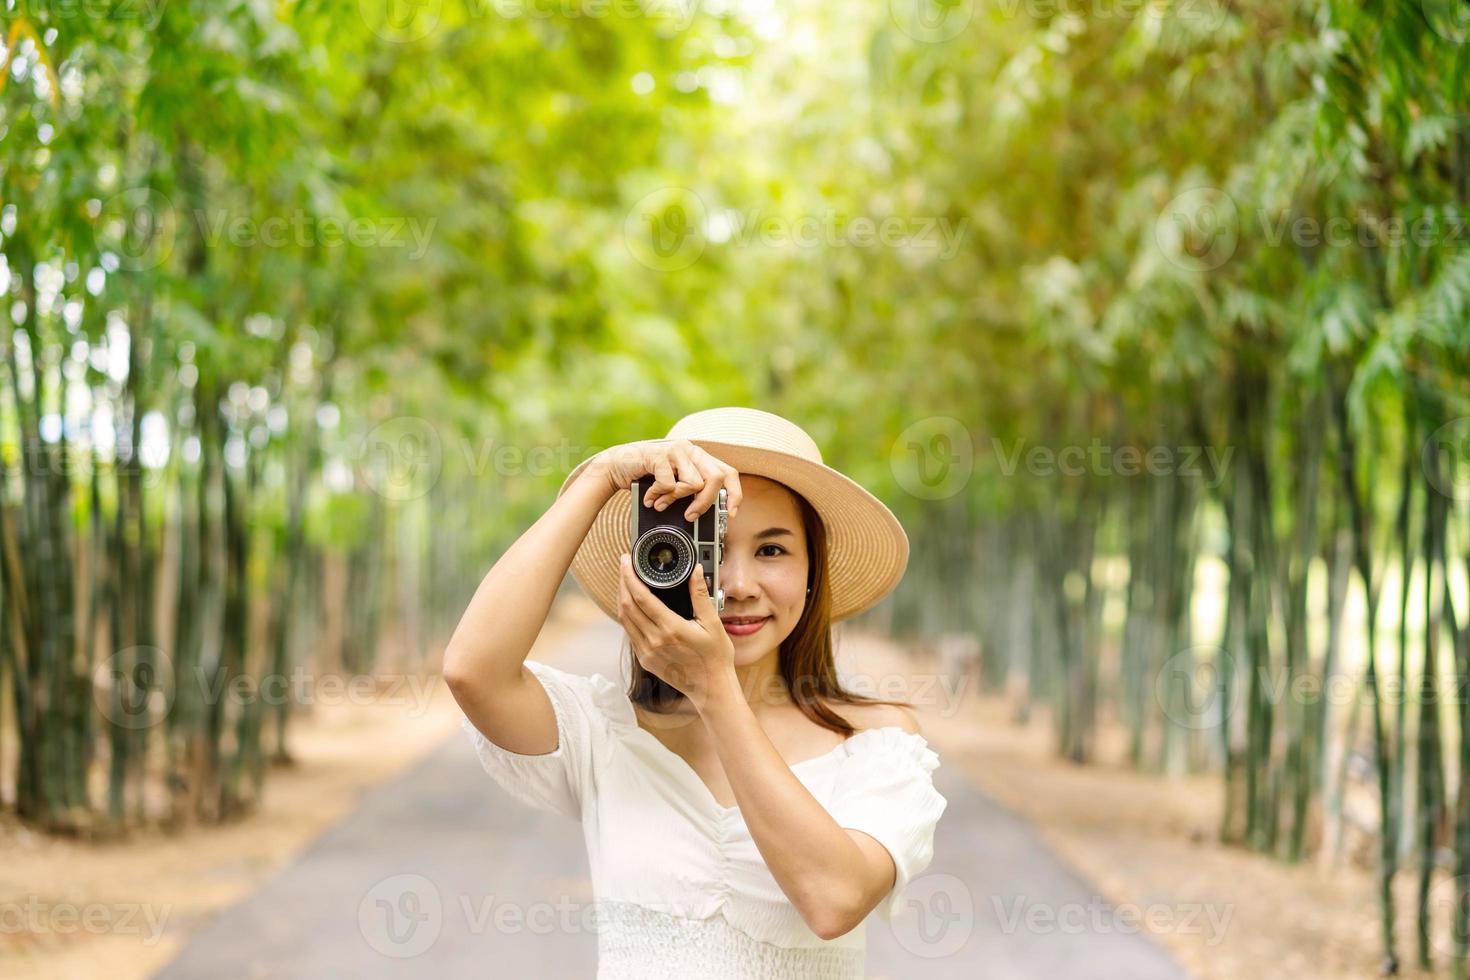 jonge gelukkige vrouw die geniet van en een foto maakt in het bamboebos tijdens het reizen in de zomer